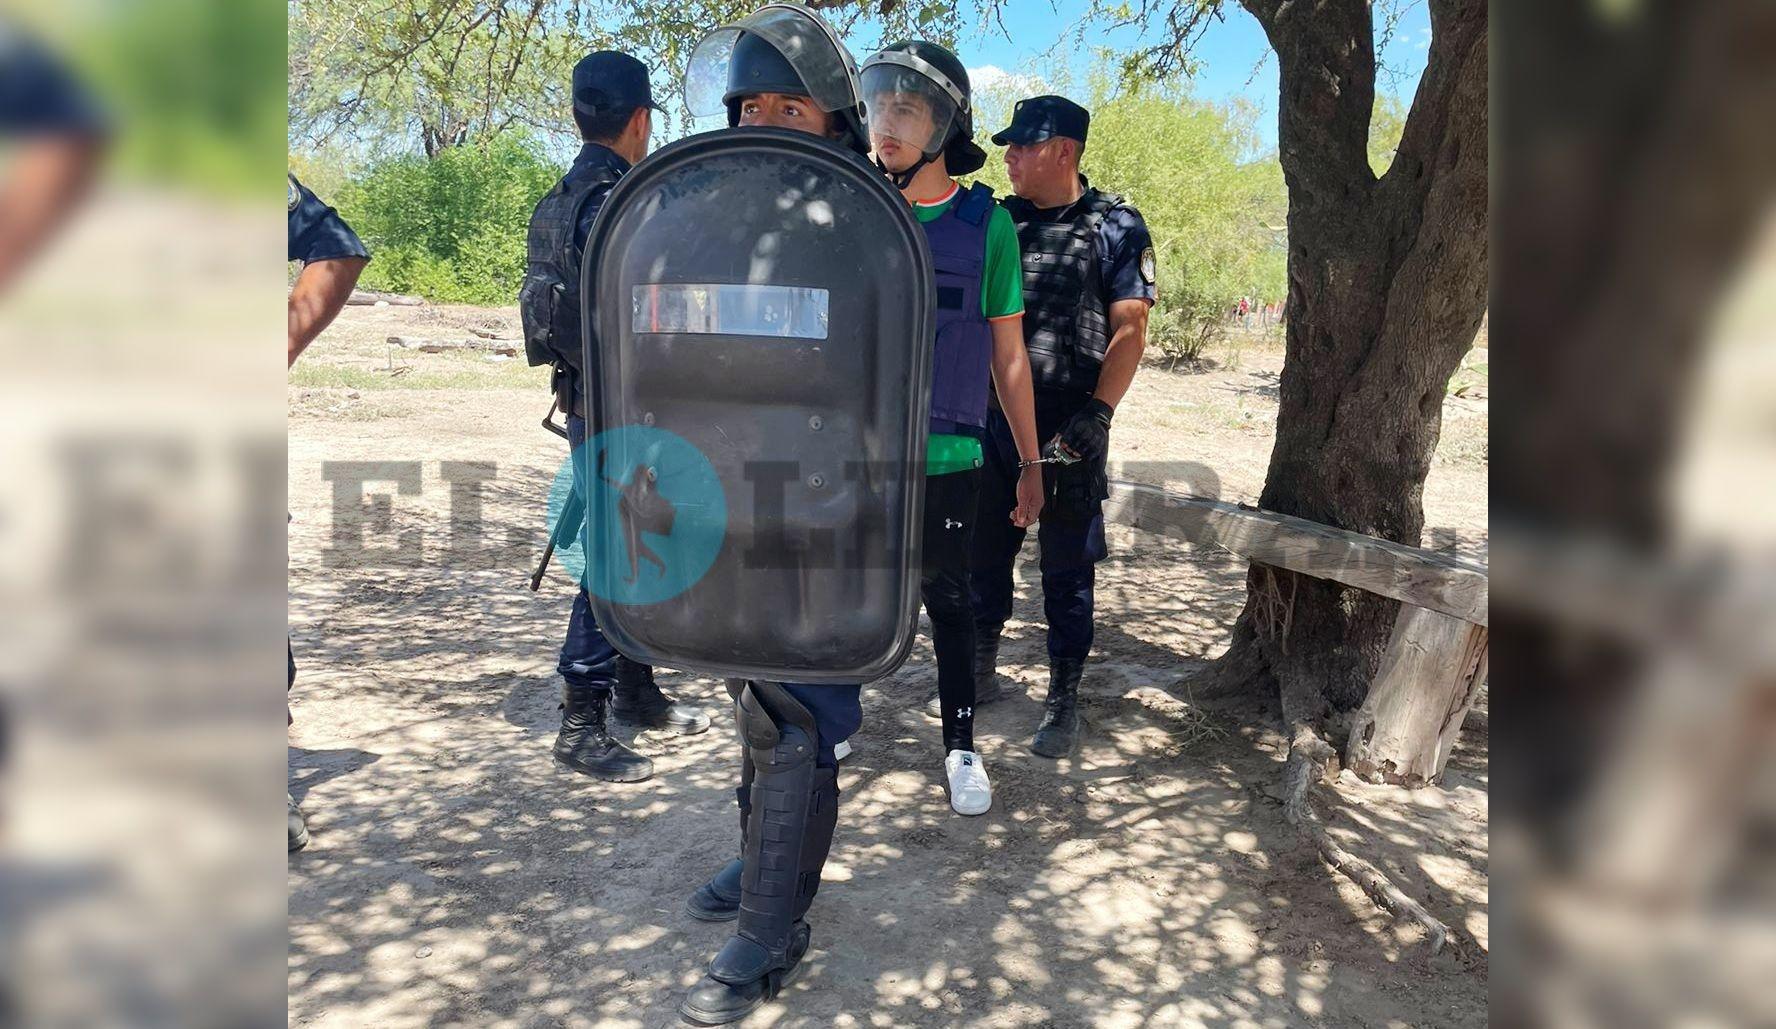 Custodiado por la policiacutea- Nicolaacutes Goacutemez presente en la reconstruccioacuten del femicidio de Milady Herrera